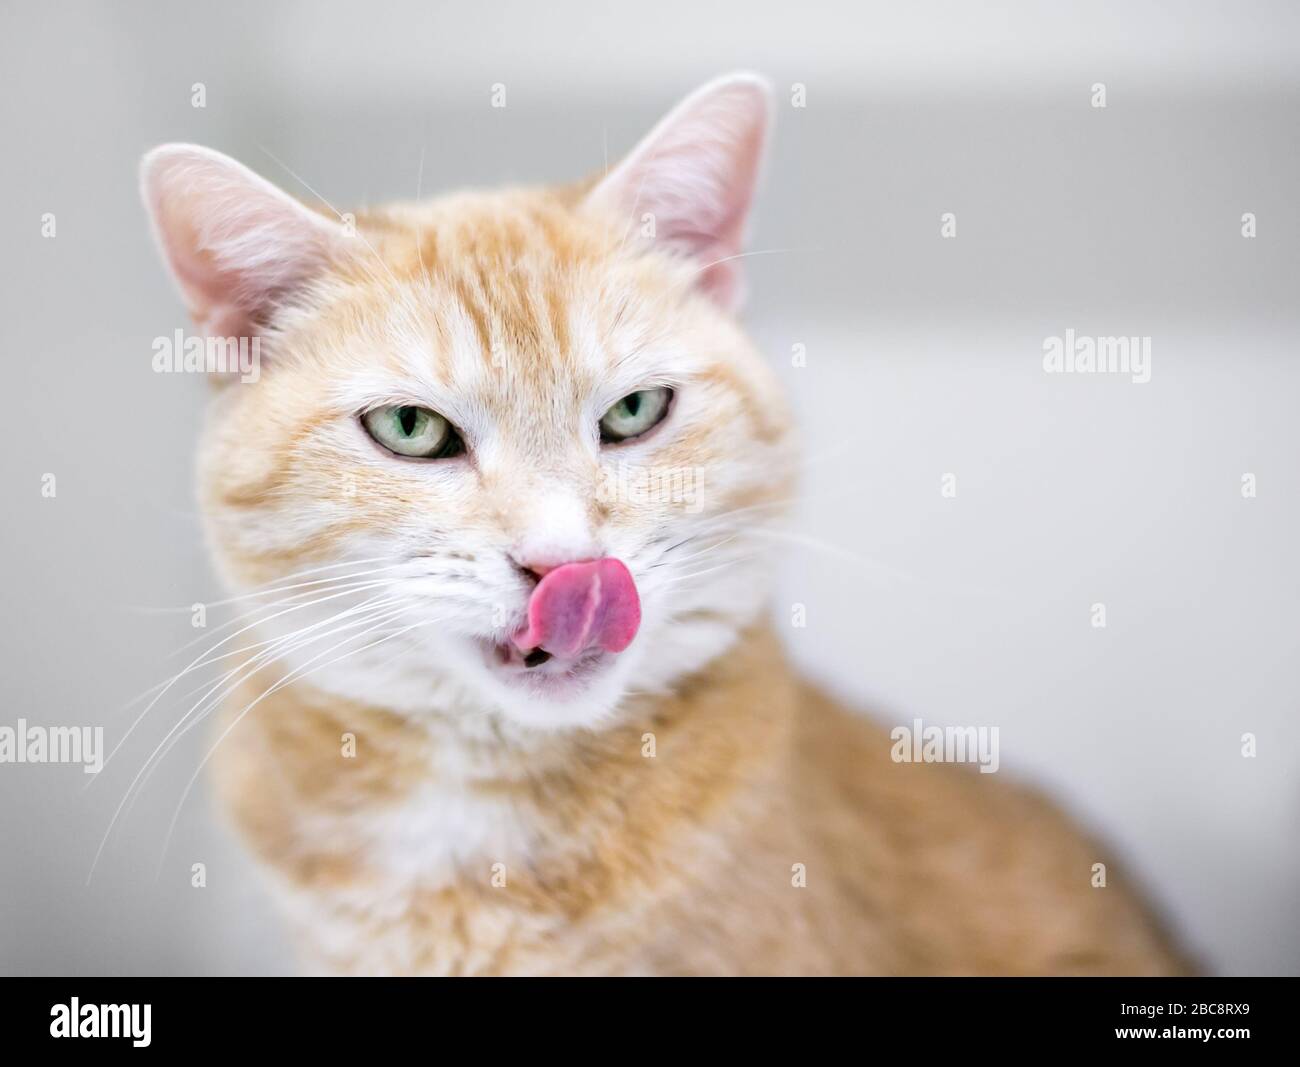 Un chat de shorthair domestique tabby orange léchant ses lèvres Banque D'Images